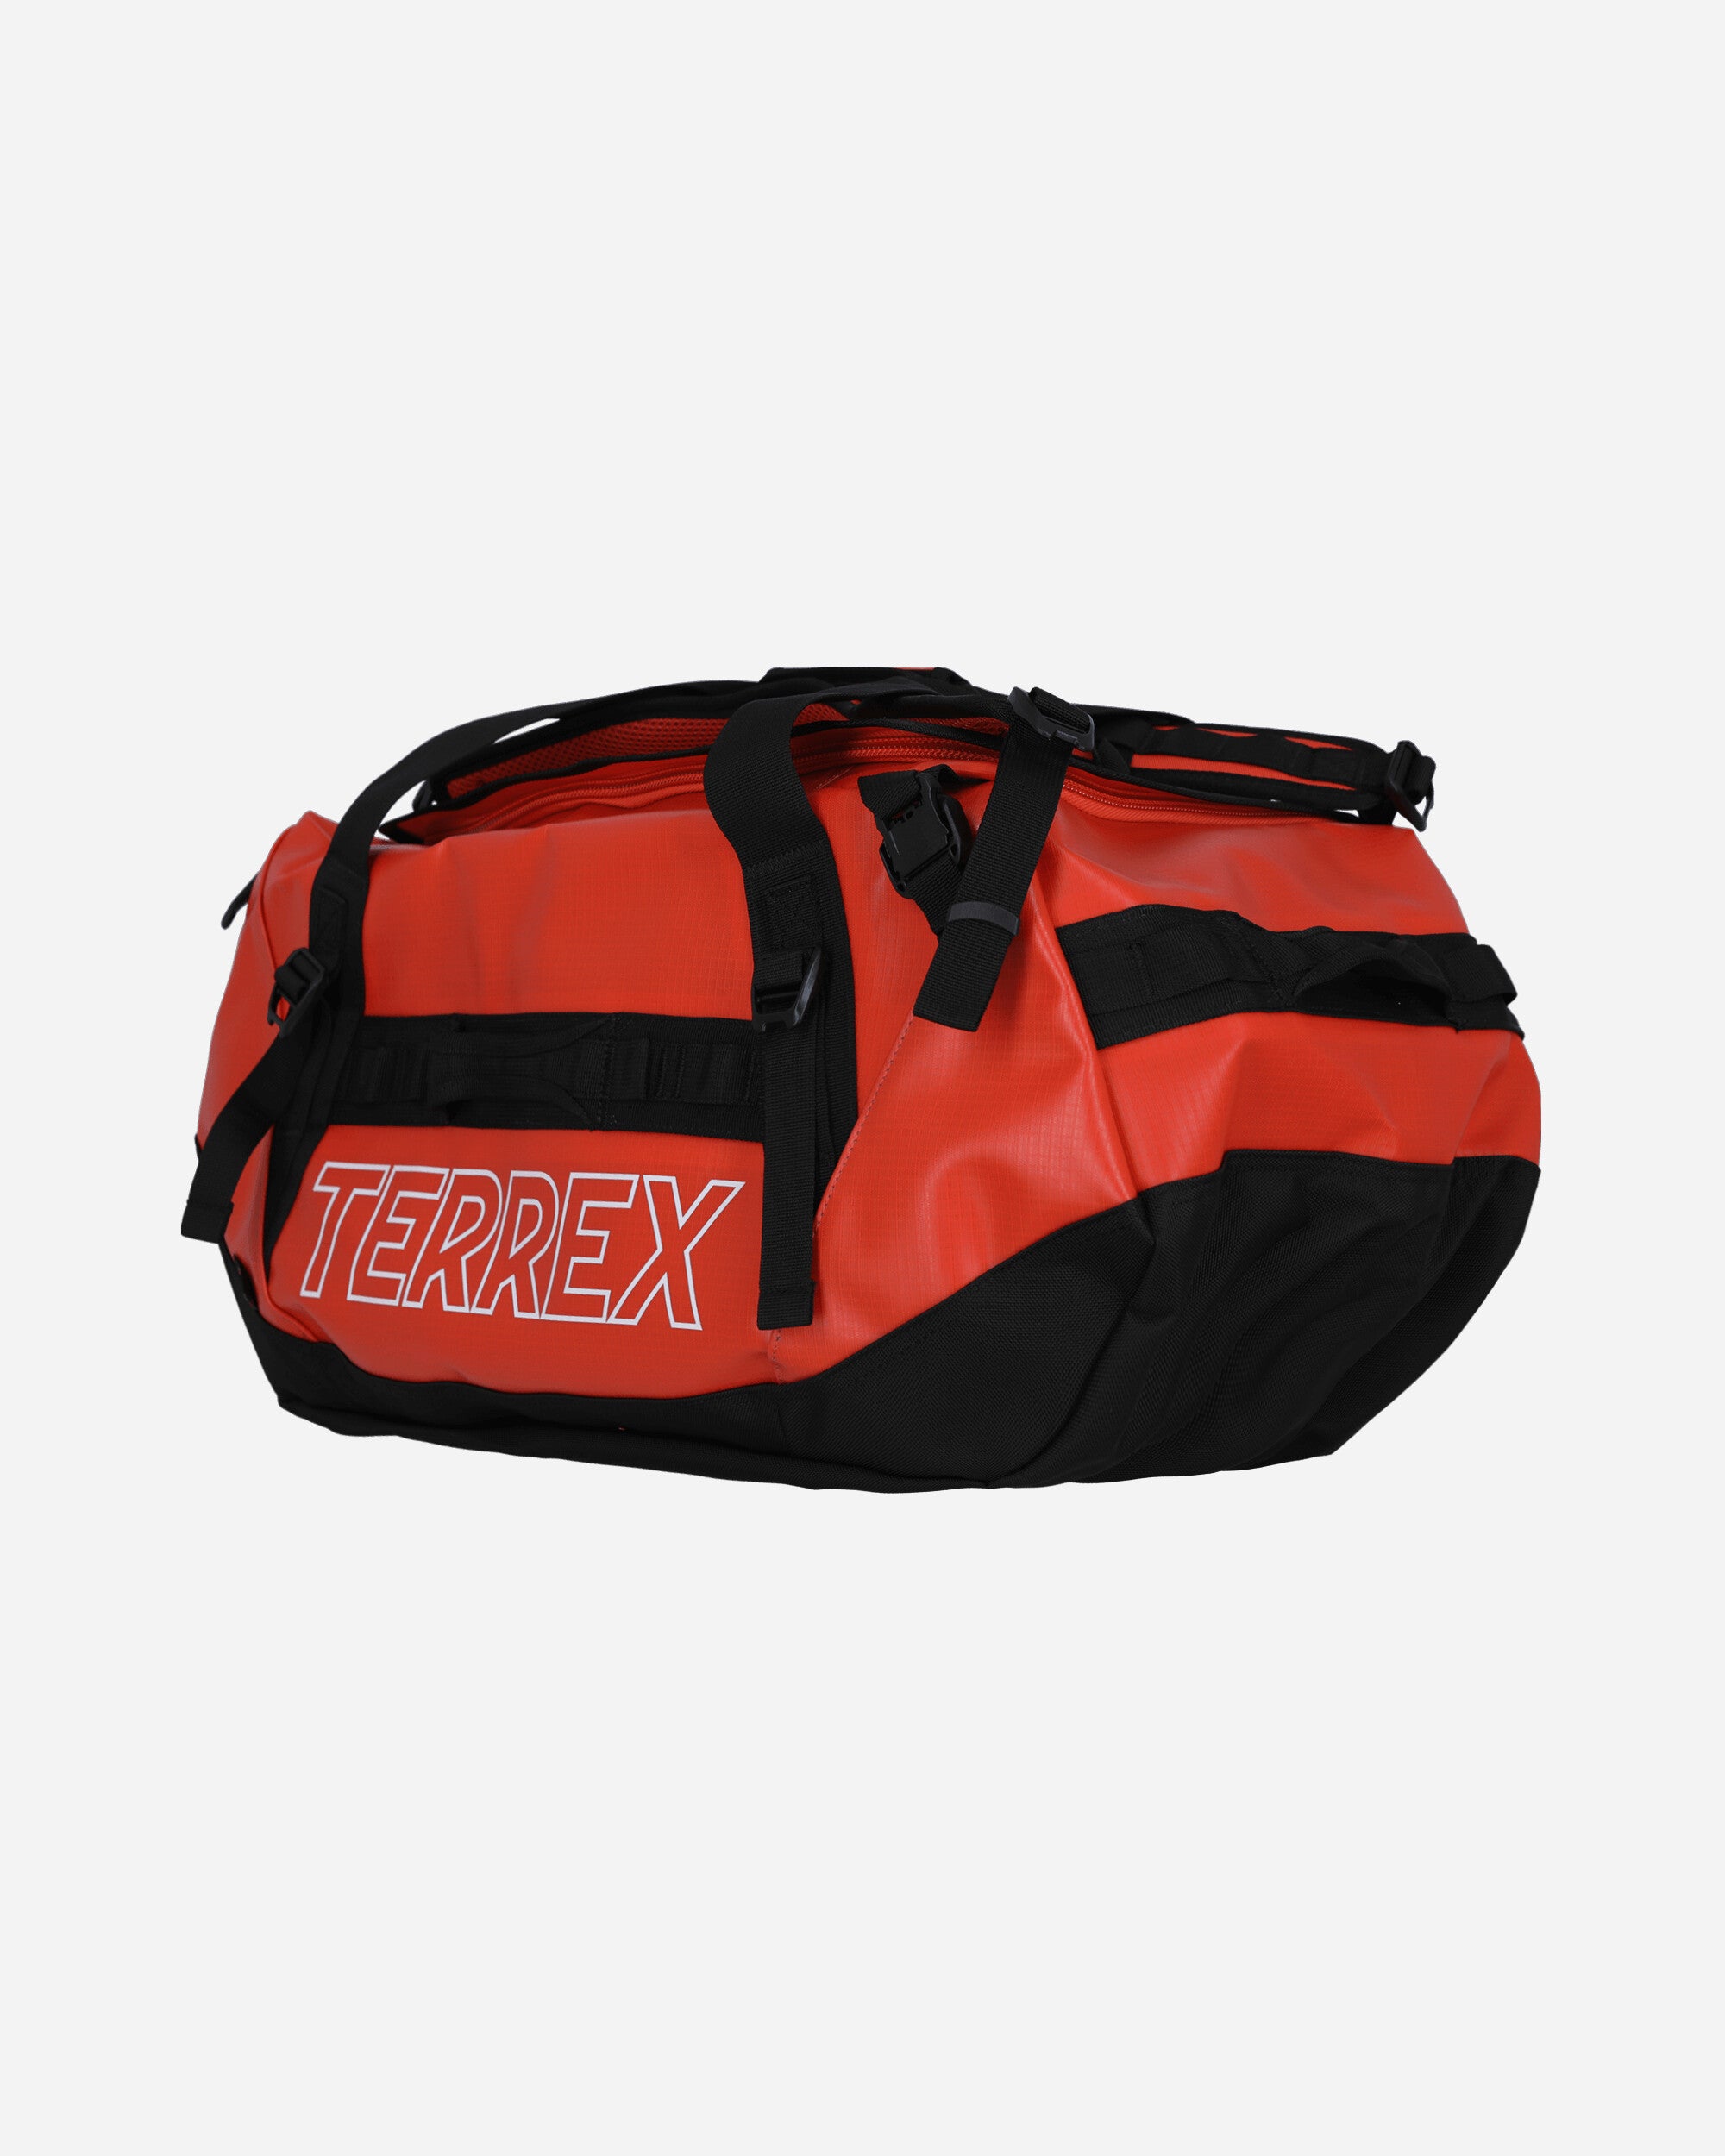 TERREX Expedition Duffel Bag Medium Impact Orange